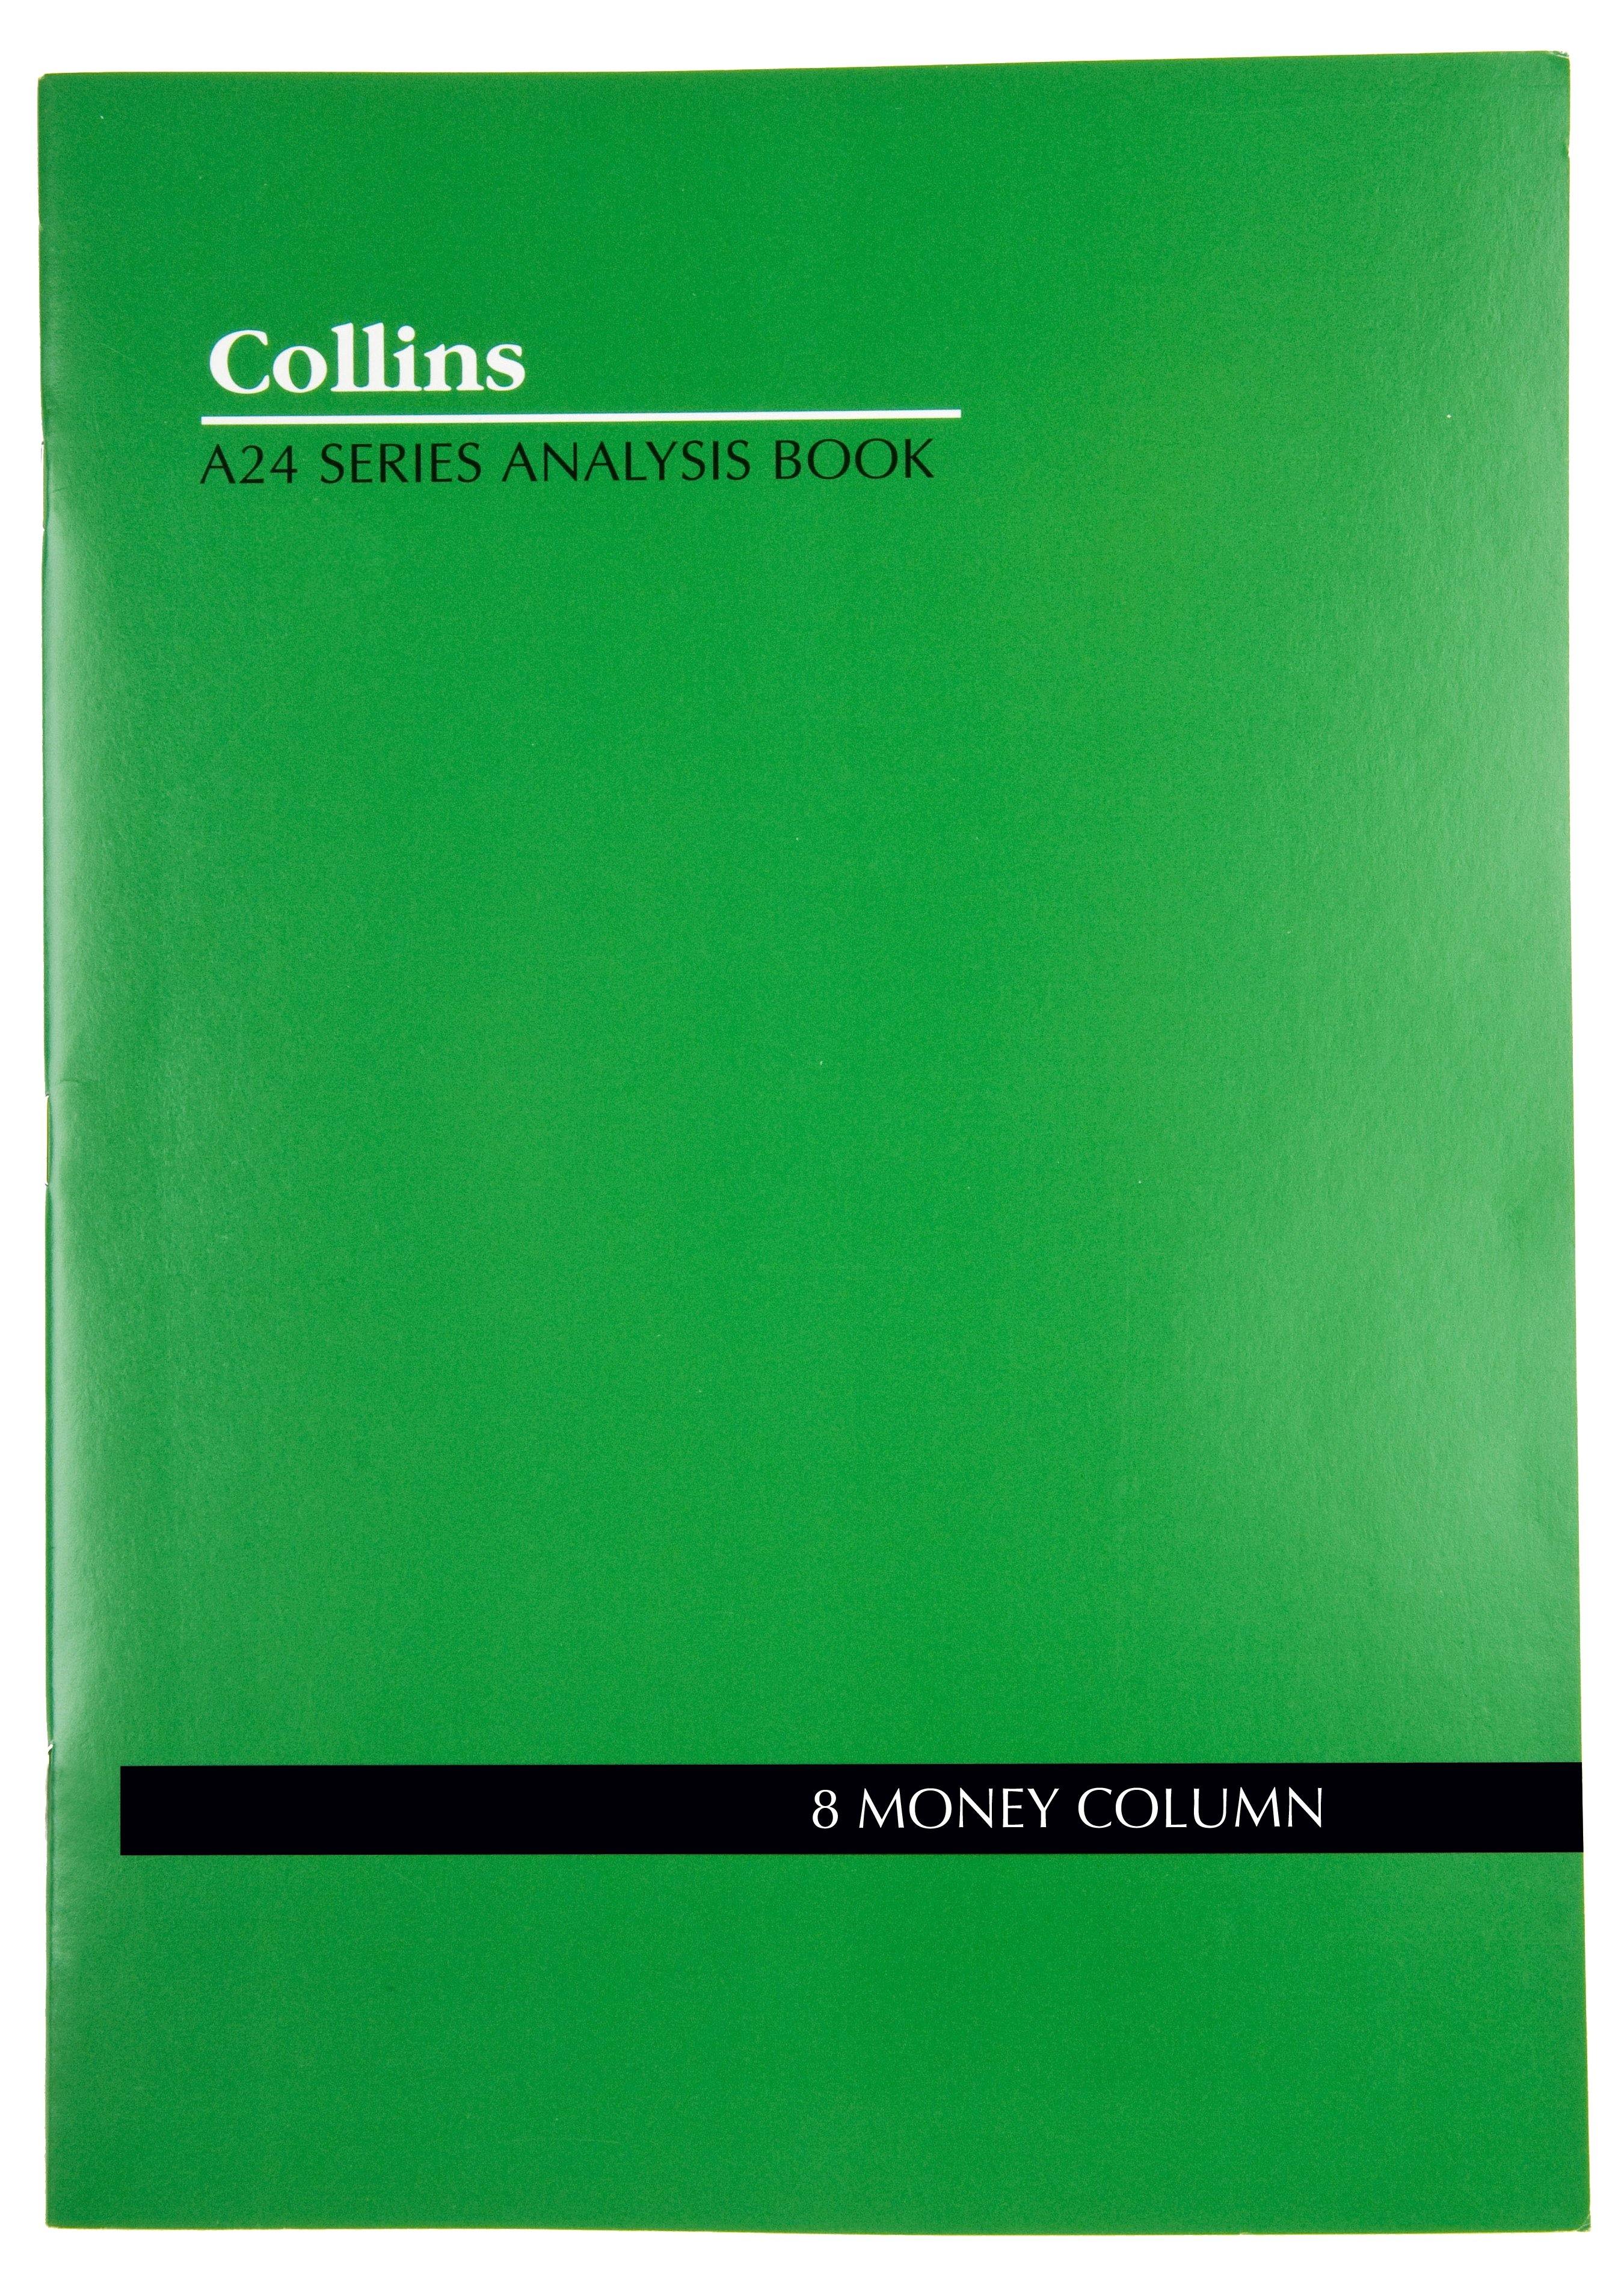 Analysis Book Series ''A24" 8 Money Column - Collins Debden